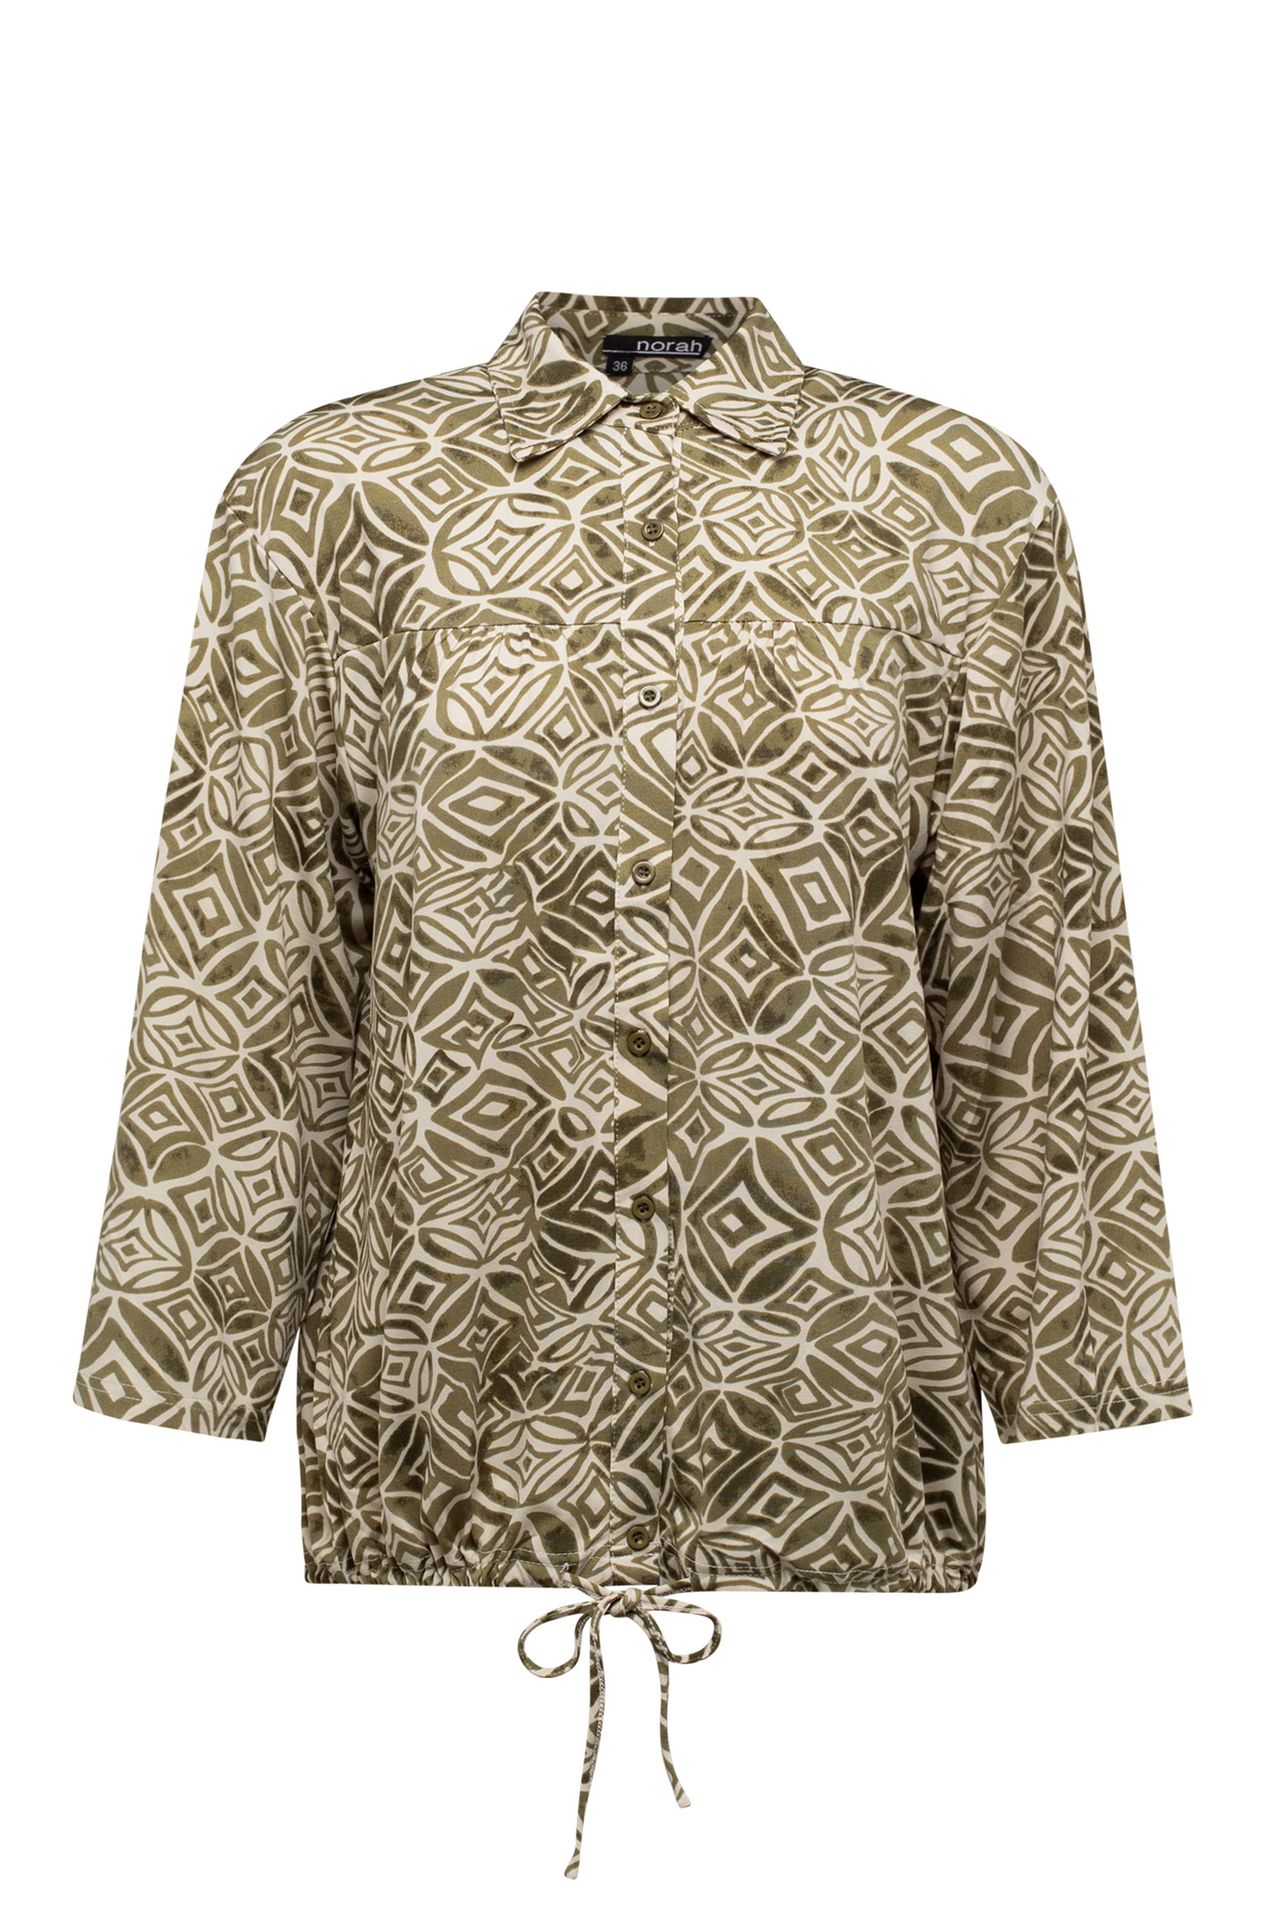 Norah Groene blouse met trekkoord green/ecru 213434-541